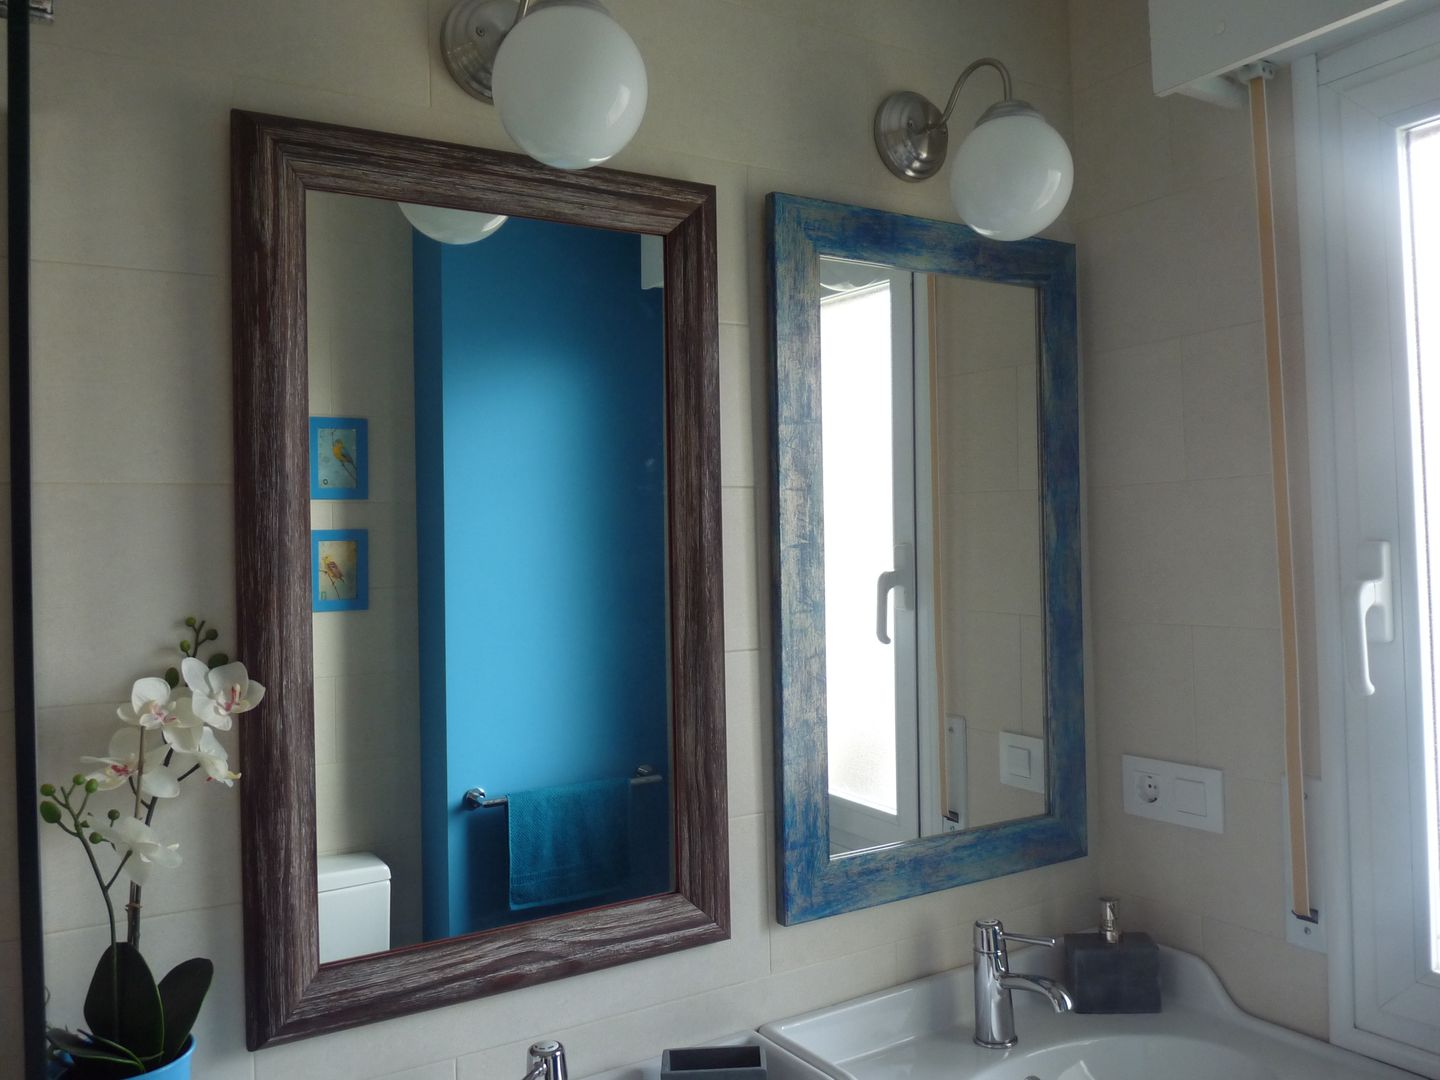 Reforma de baño: azul turquesa y baldosas impresas de mosaico hidráulico, Dec&You Dec&You 에클레틱 욕실